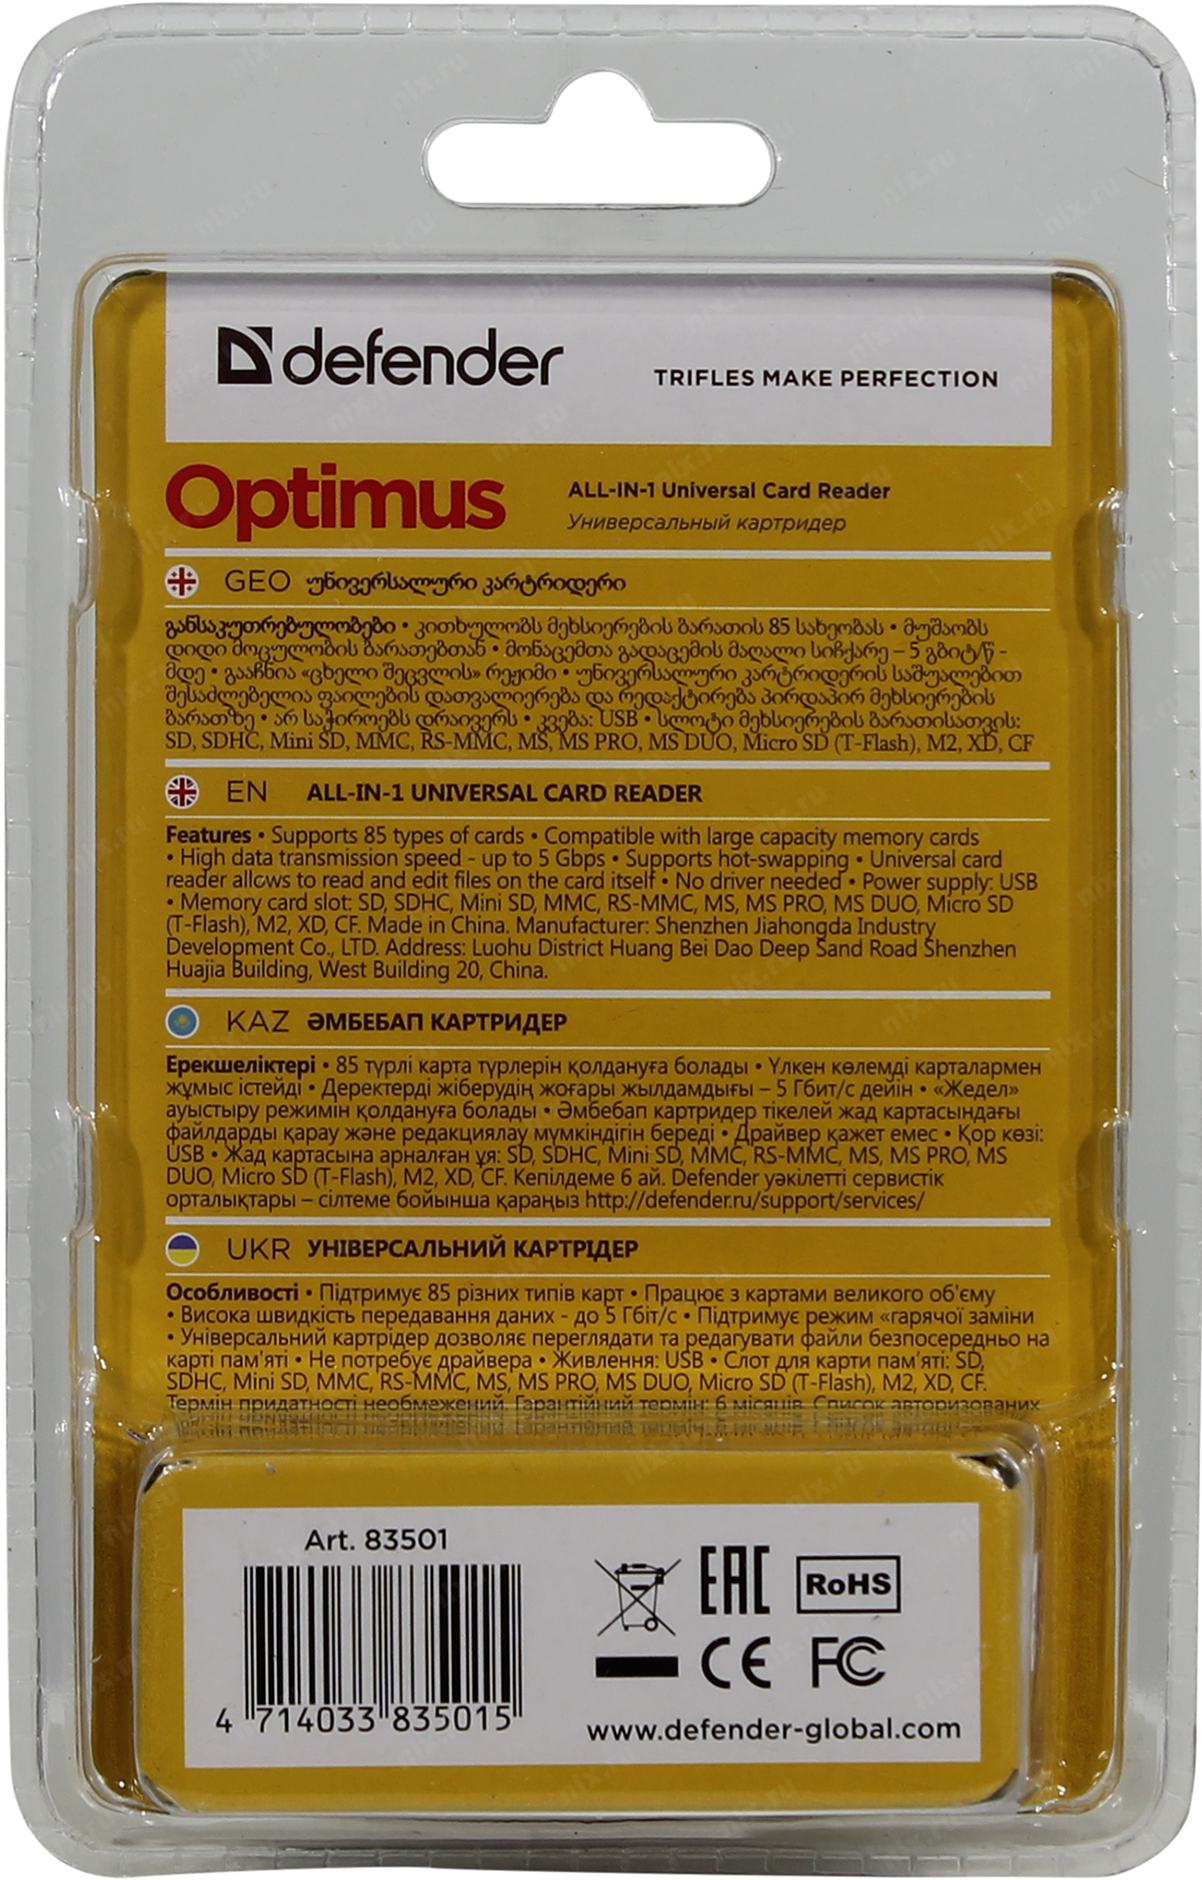 USB-концентратор Defender Quadro Dual (83207), разъемов: 2. Defender Quadro Infix (83504), разъемов: 4. Картридер Defender Ultra rapido. Defender Optimus 83501. Defender global